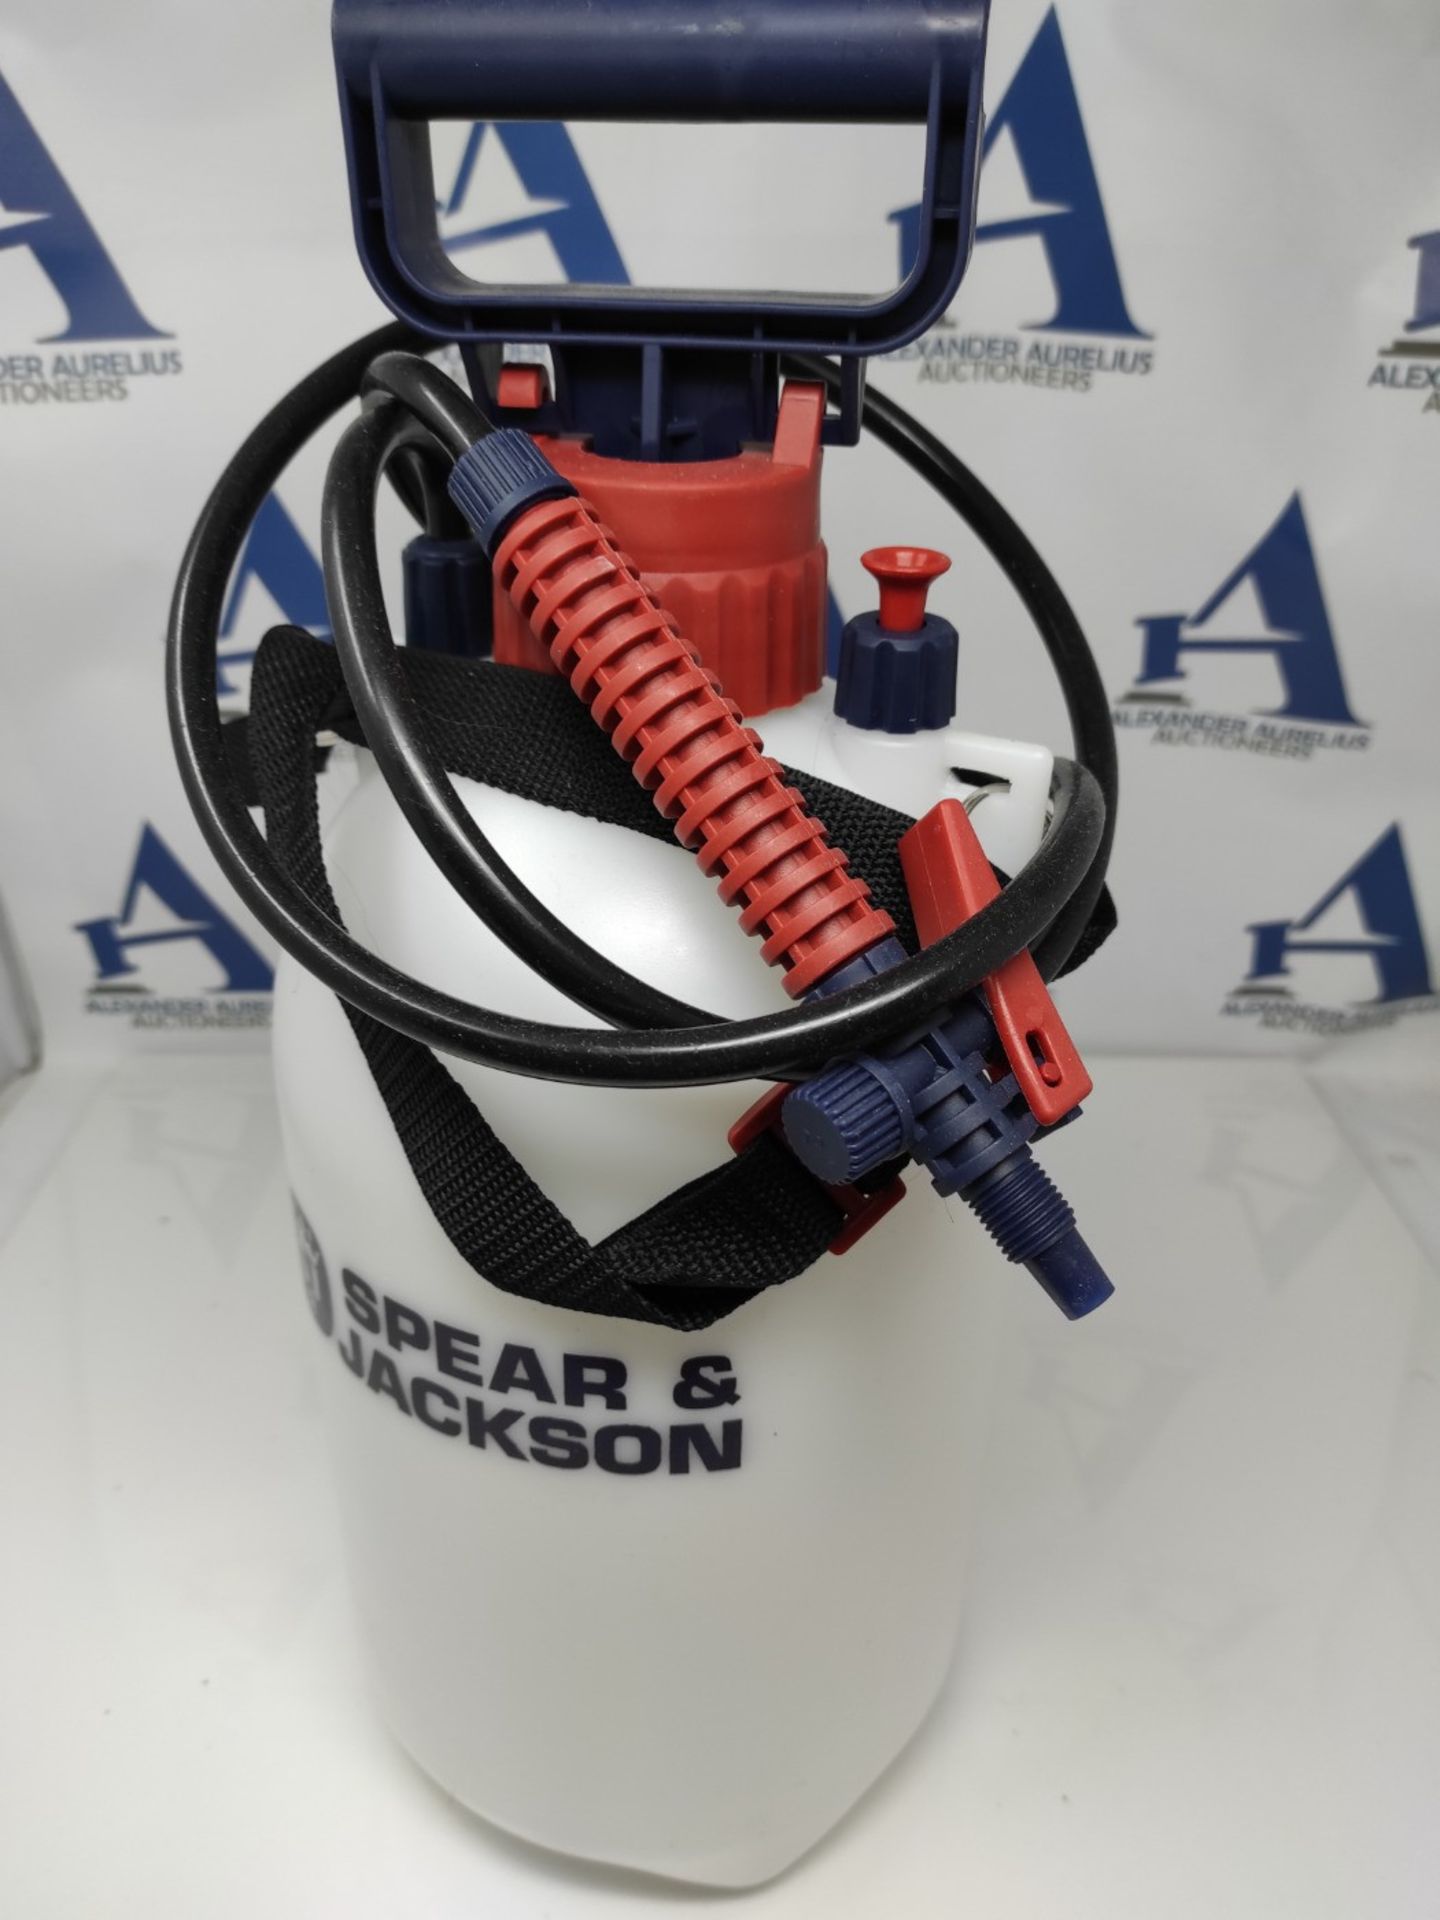 Spear & Jackson 5LPAPS Pressure Sprayer, with pump action, 5 liters - Bild 3 aus 3